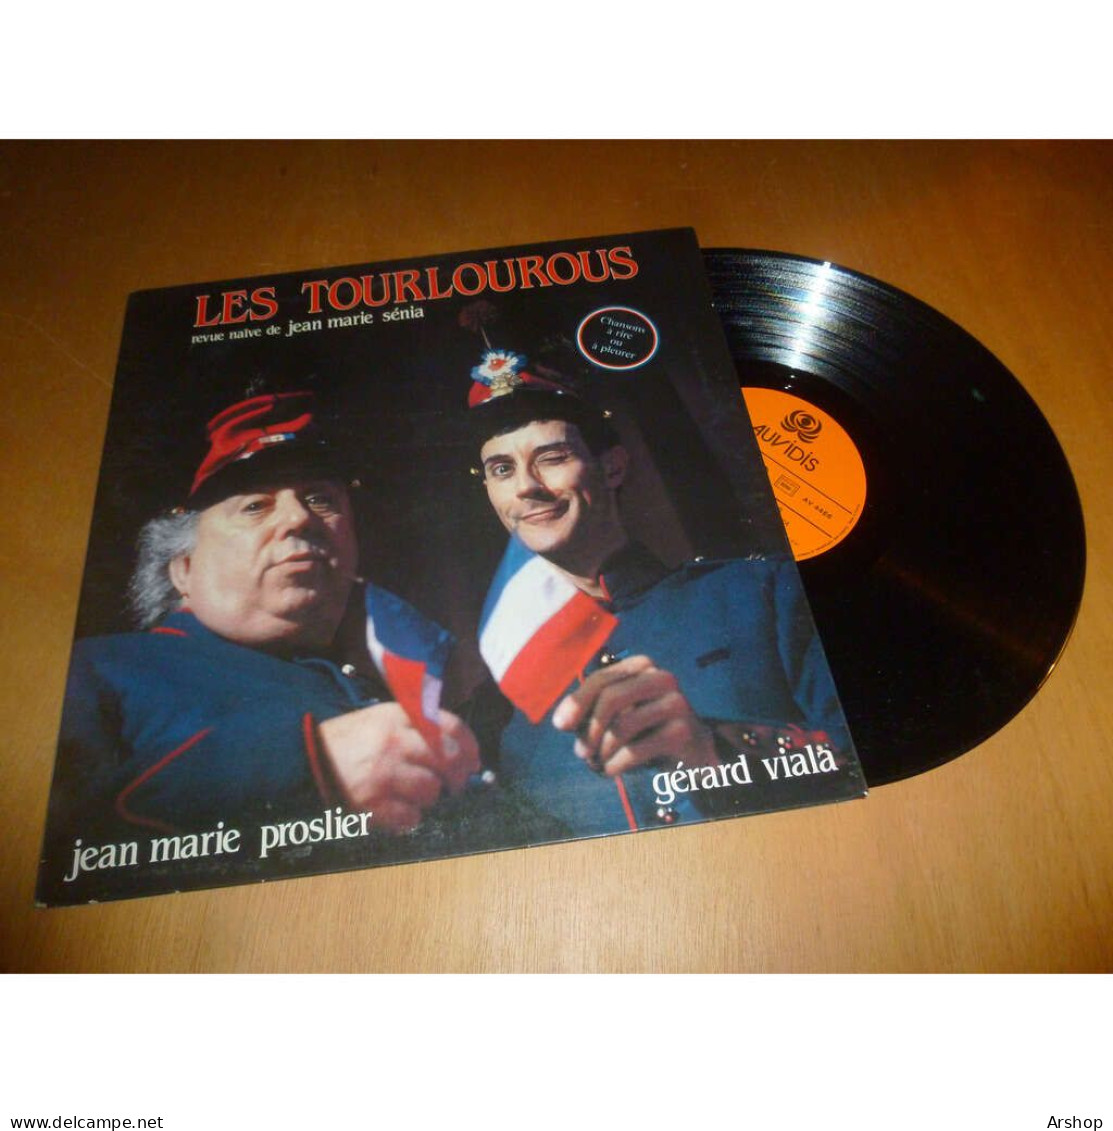 JEAN MARIE PROSLIER & GERARD VIALA Les Trourlourous - Revue Naïve De Jean Marie Senia AUVIDIS Lp 1985 - Andere - Franstalig